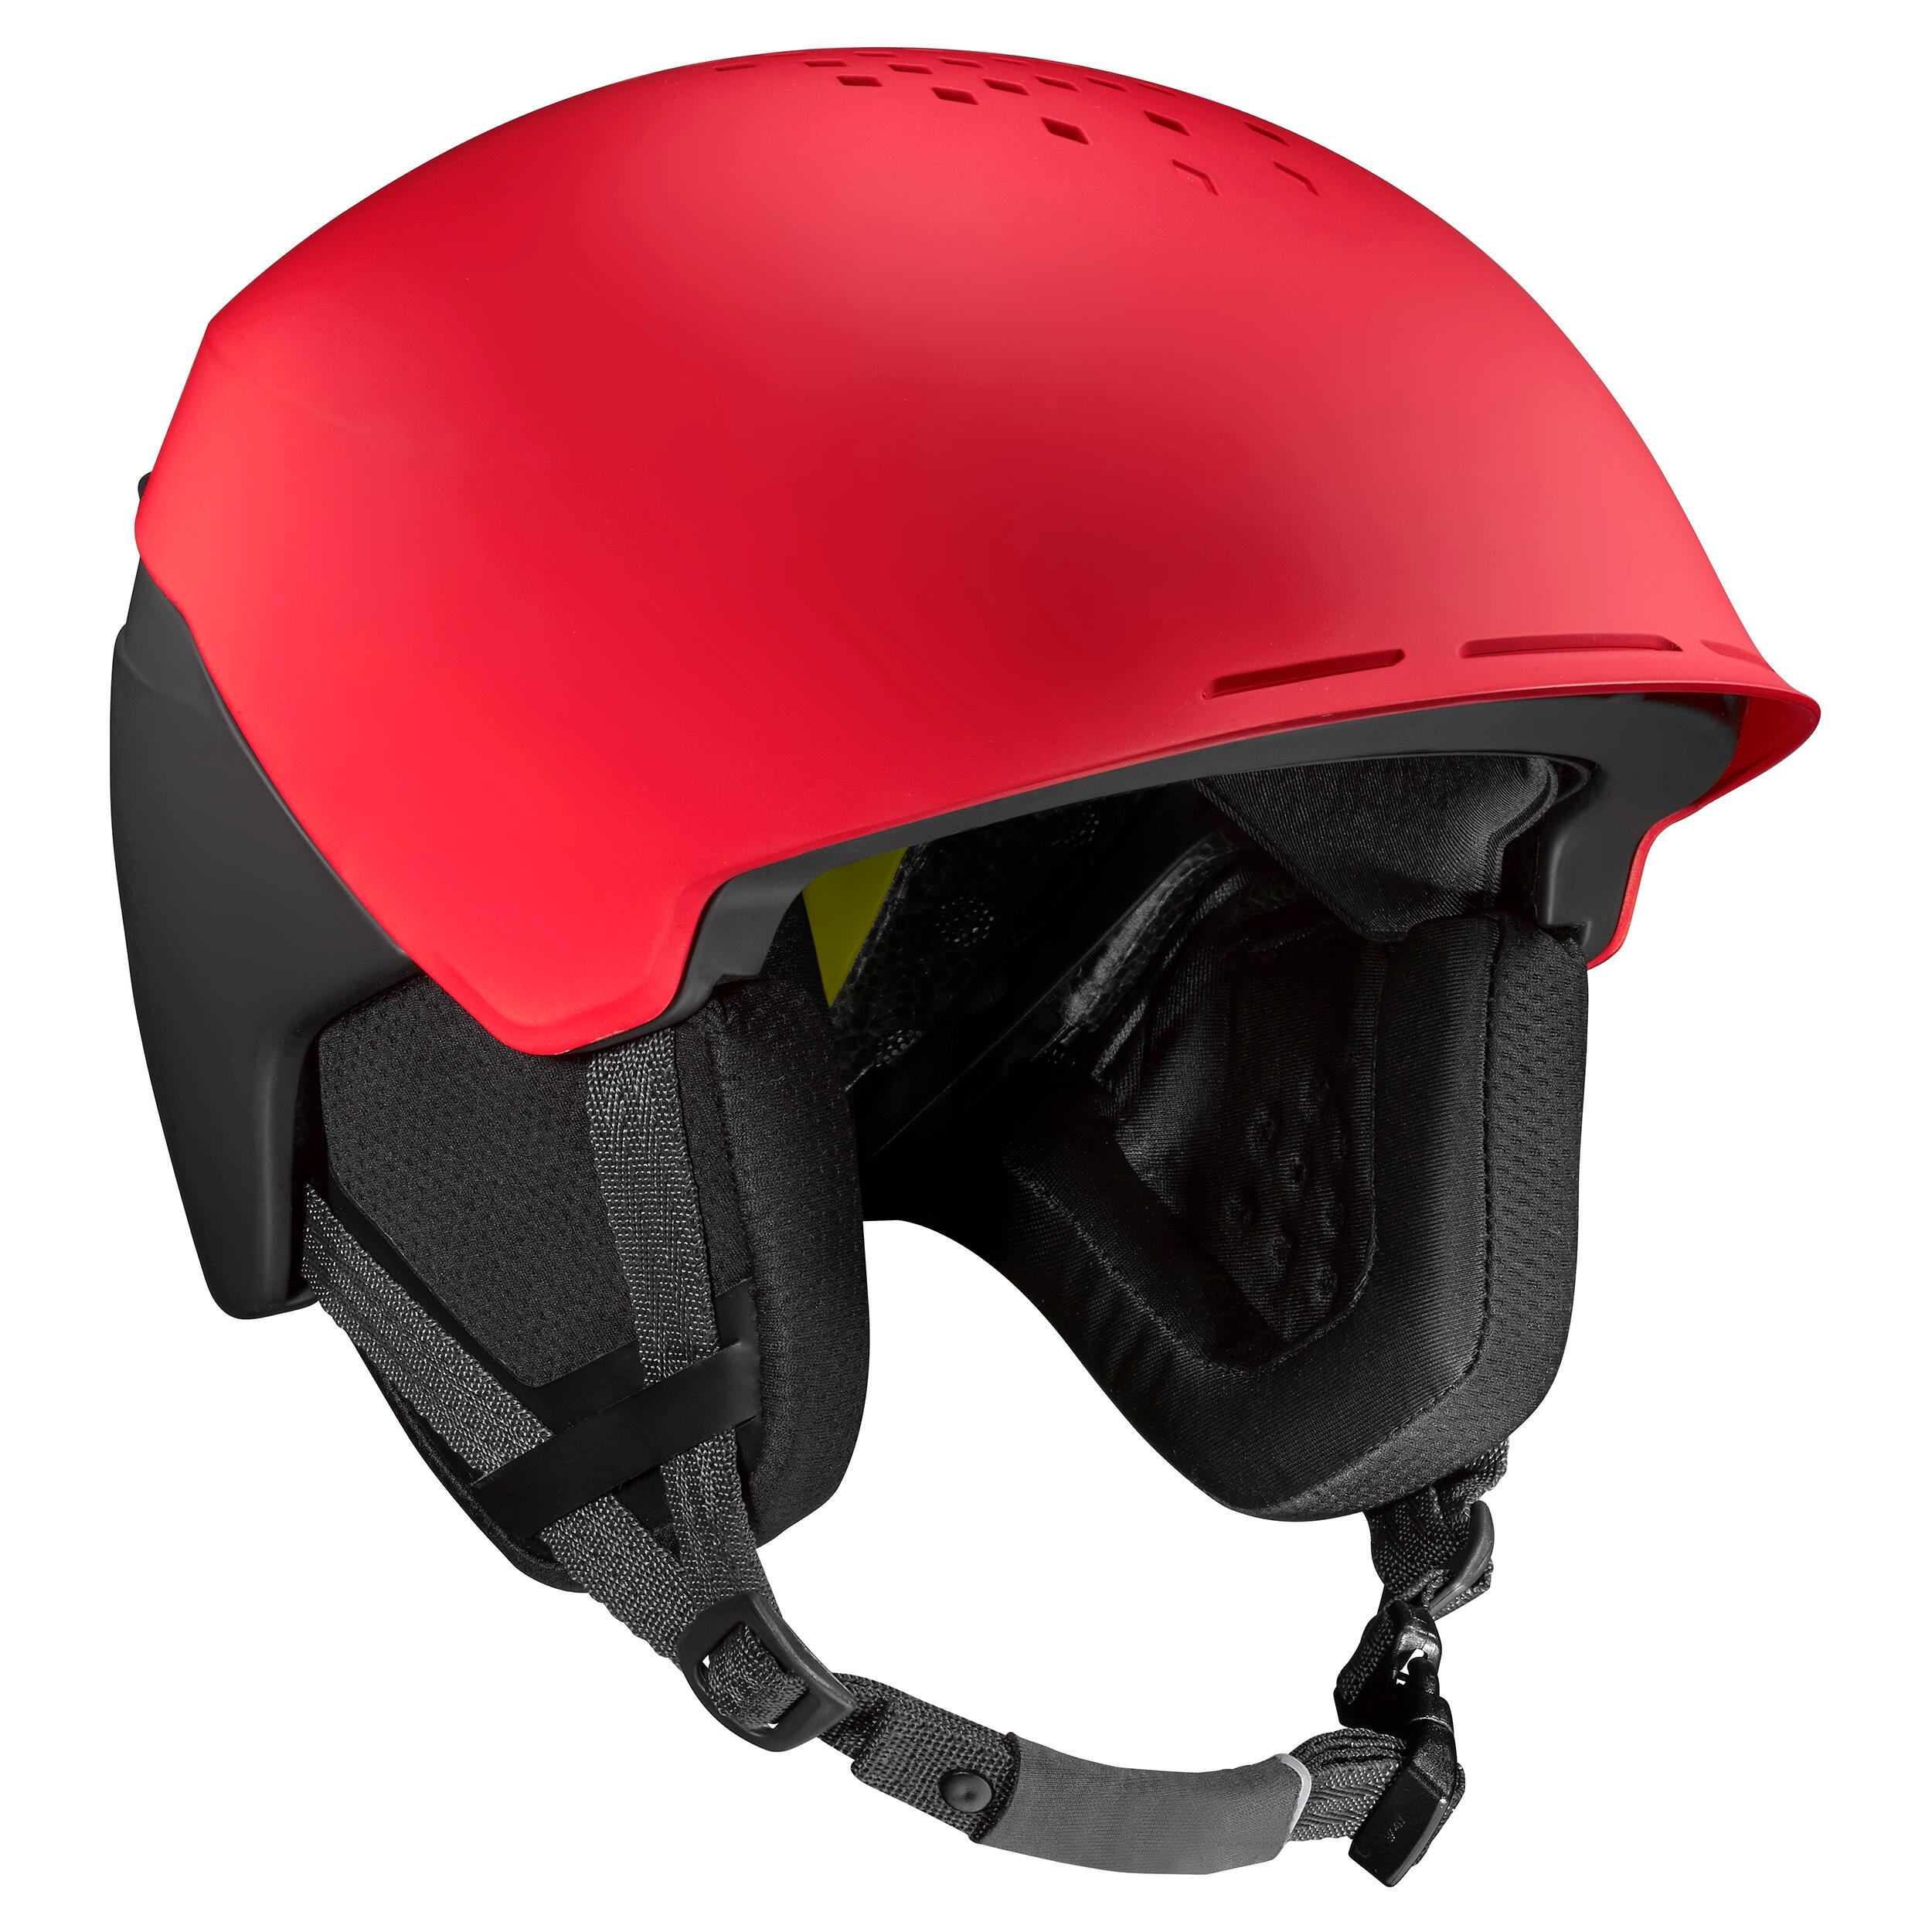 WEDZE Adult Freeride Ski Helmet FR 900 MIPS - Red/Black